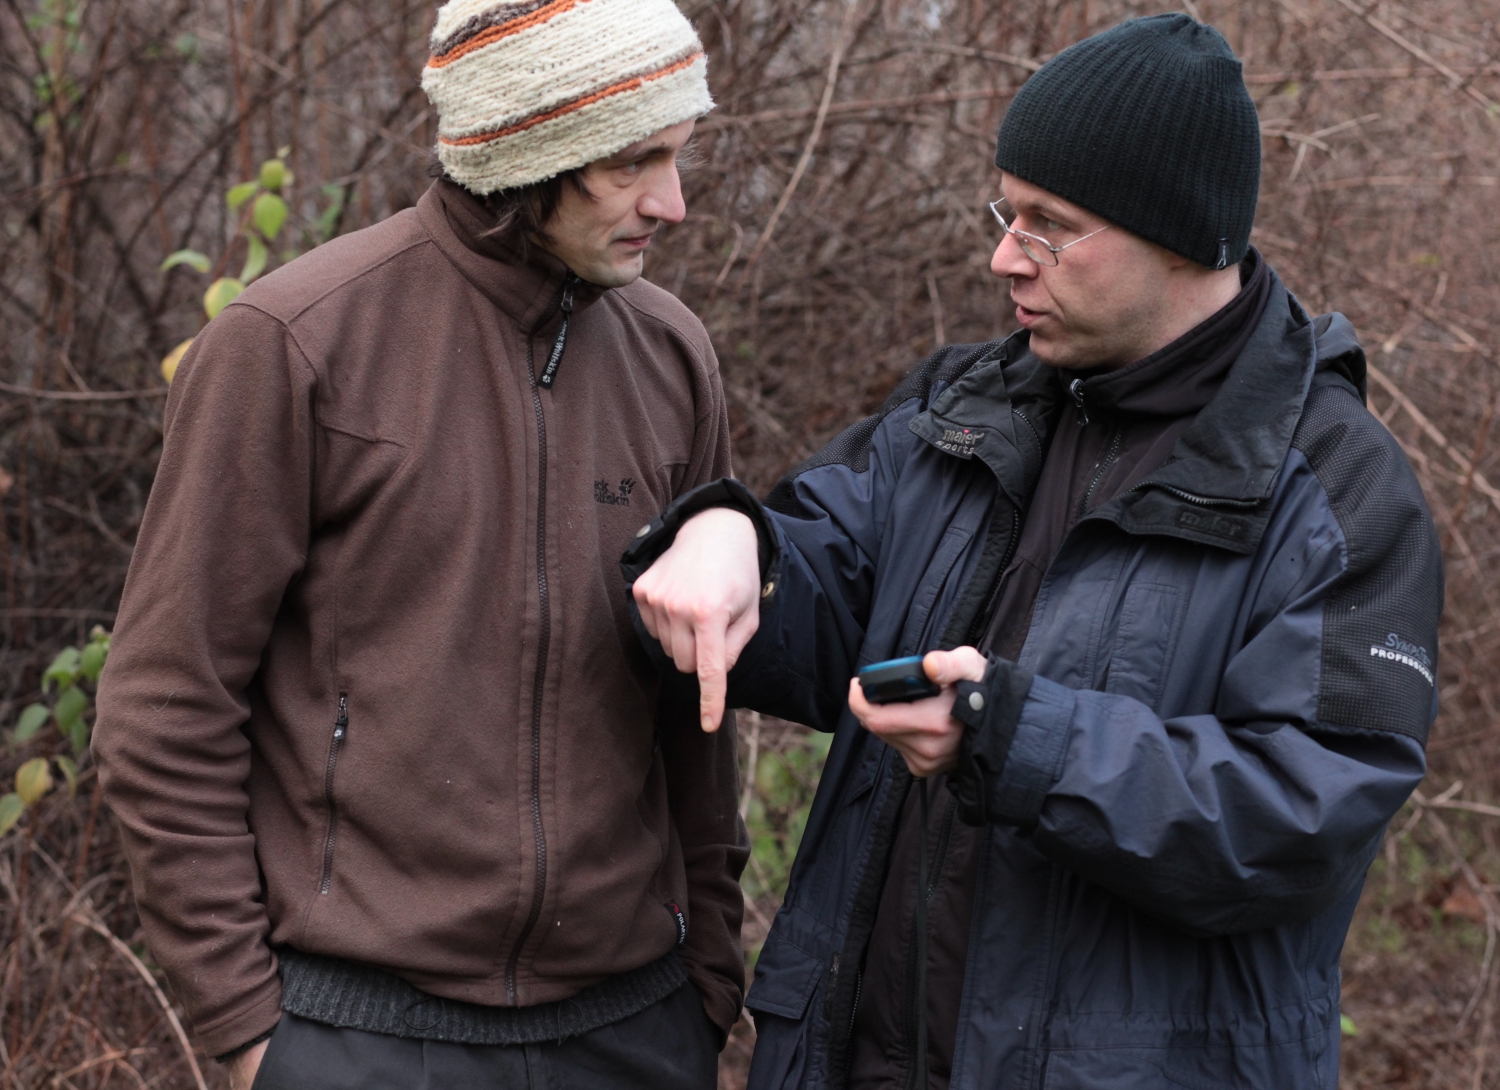 Filip erklärt Sebastian die Bedienung des GPS-Geräts.